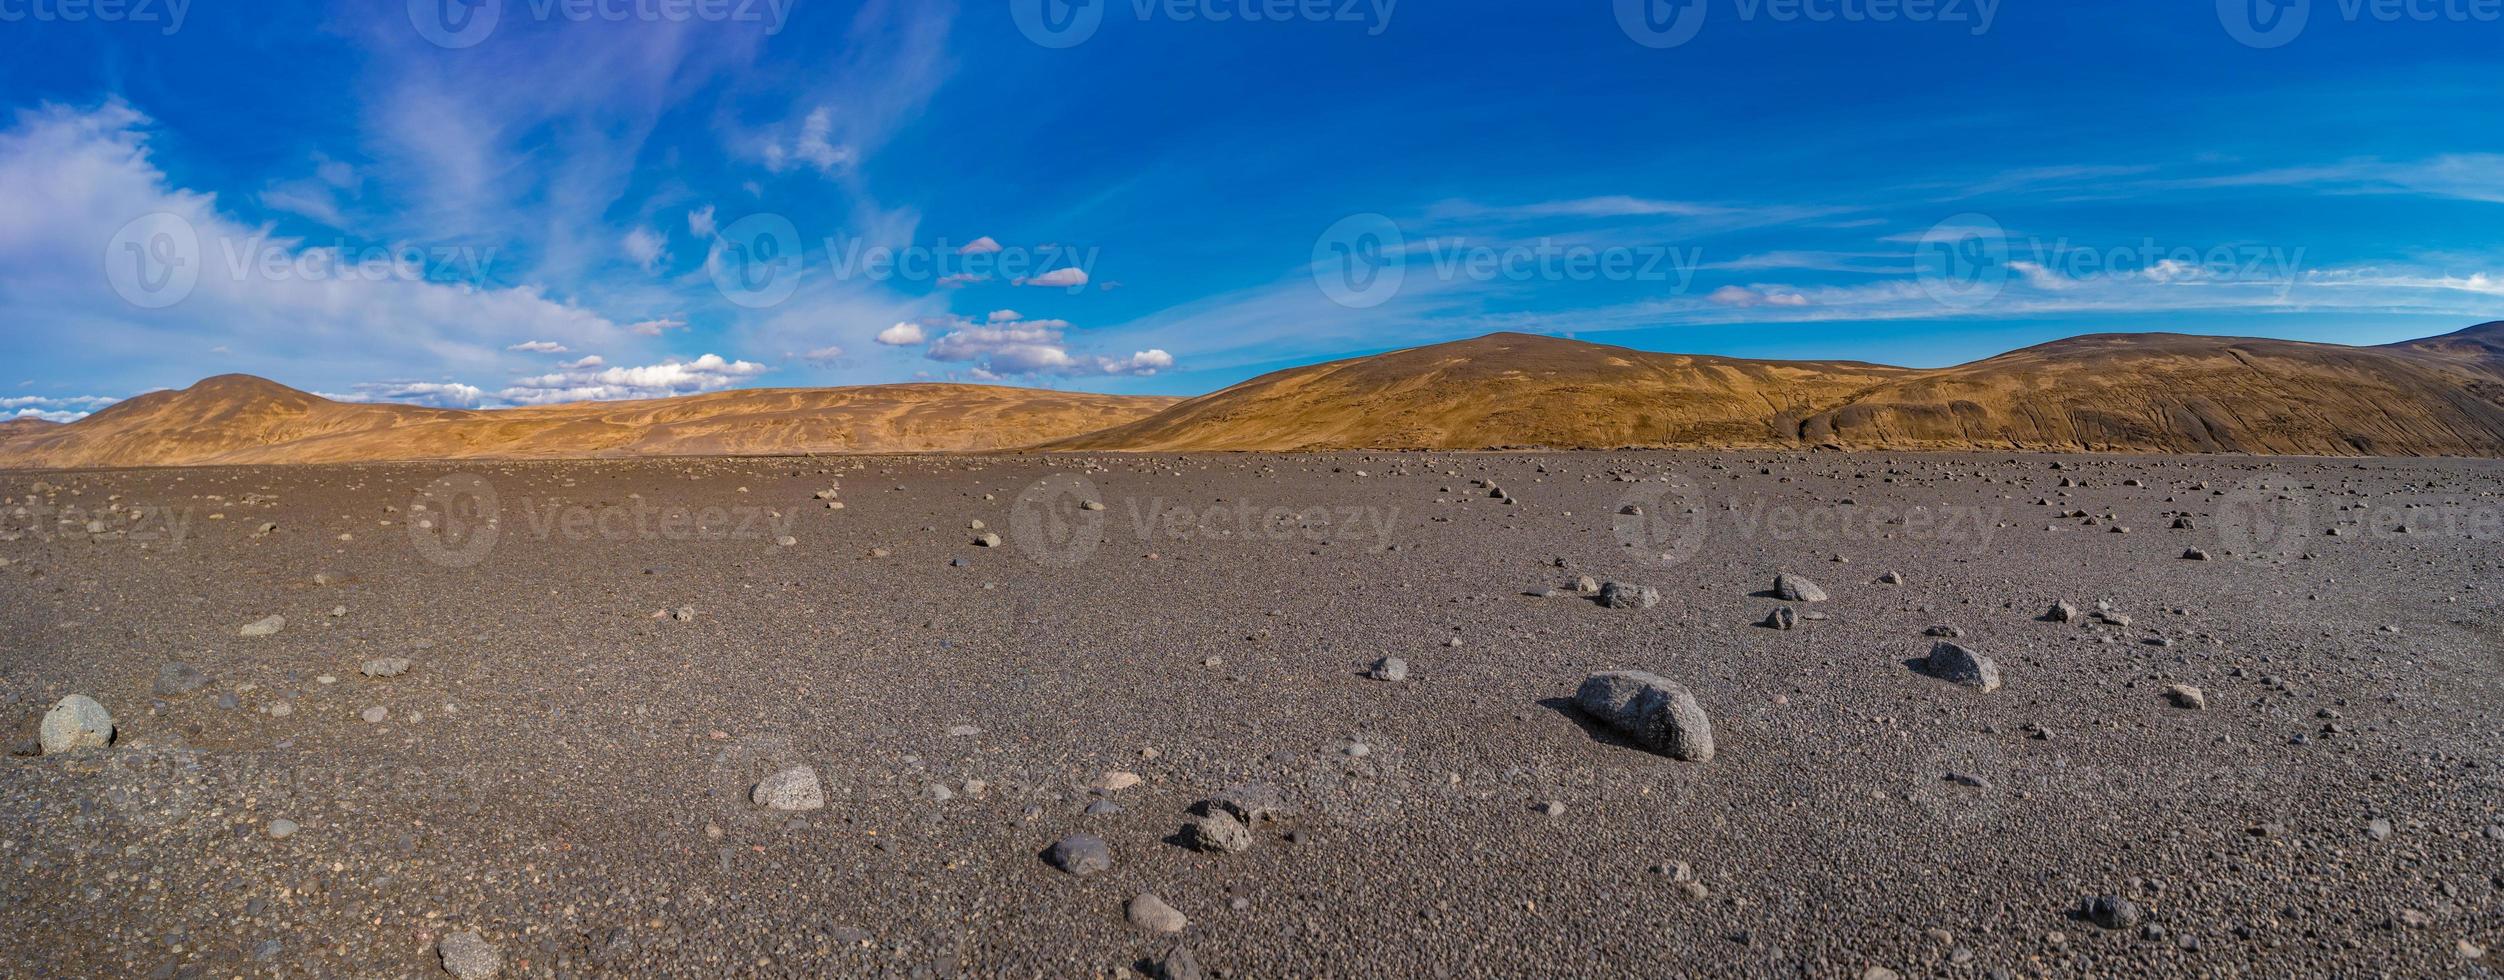 vista panoramica sul paesaggio islandese del deserto vulcanico più mortale degli altopiani, con pietre e rocce lanciate da eruzioni vulcaniche e trekking lungo la strada, Islanda, estate, cielo blu. foto